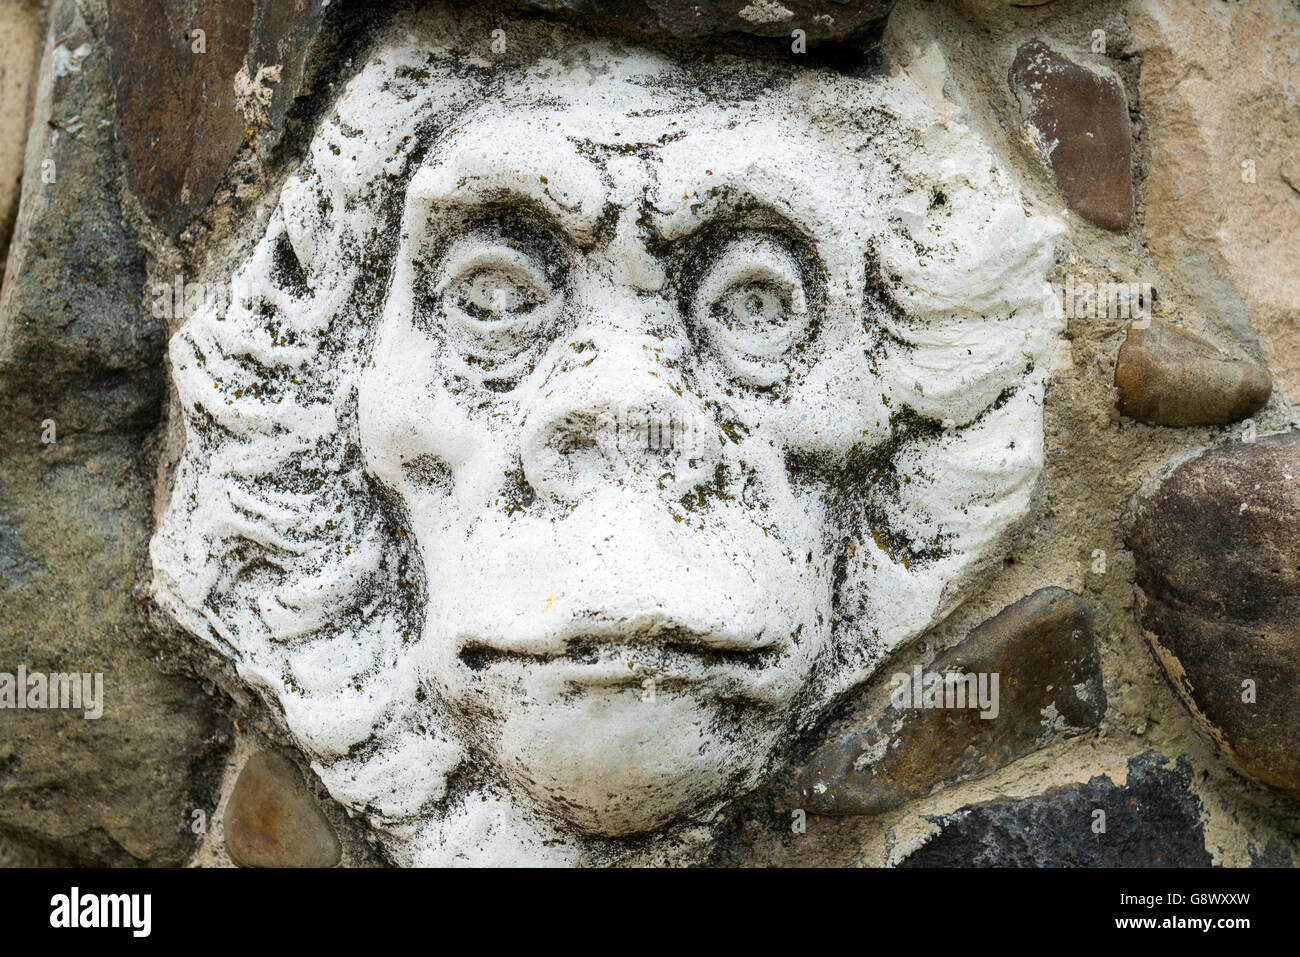 Monkey face sculpture par Mykola Holowan dans sa maison à Kiev, Ukraine Banque D'Images